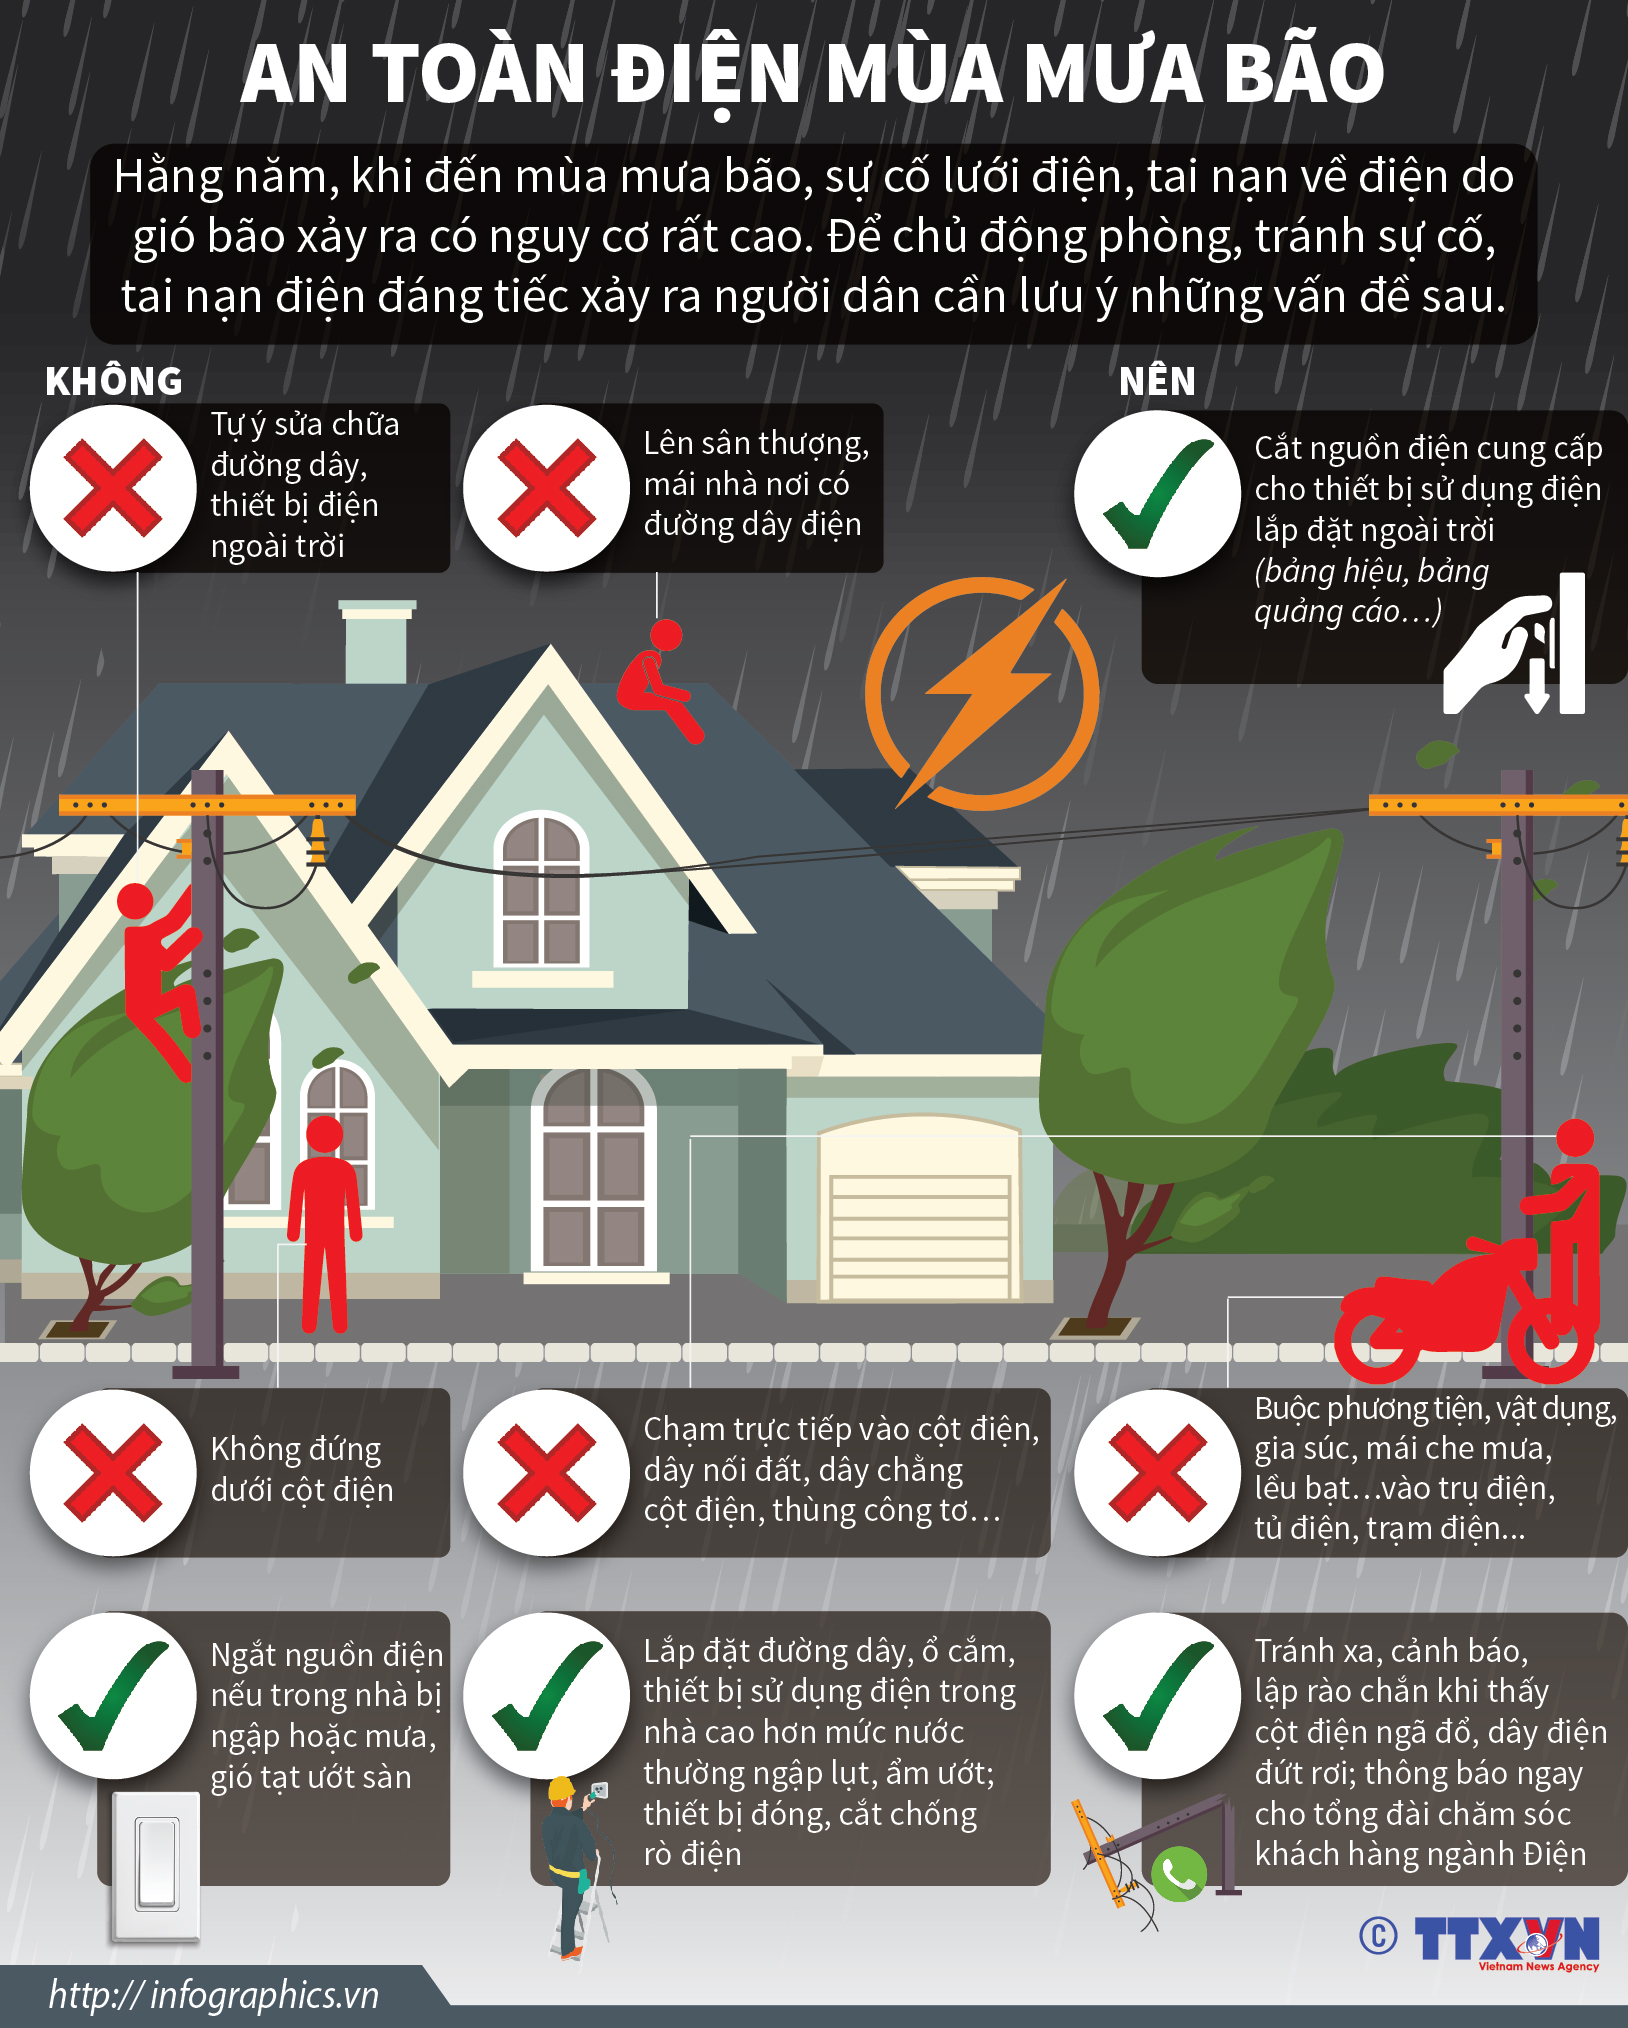 An toàn điện mùa mưa bão: cách nào?